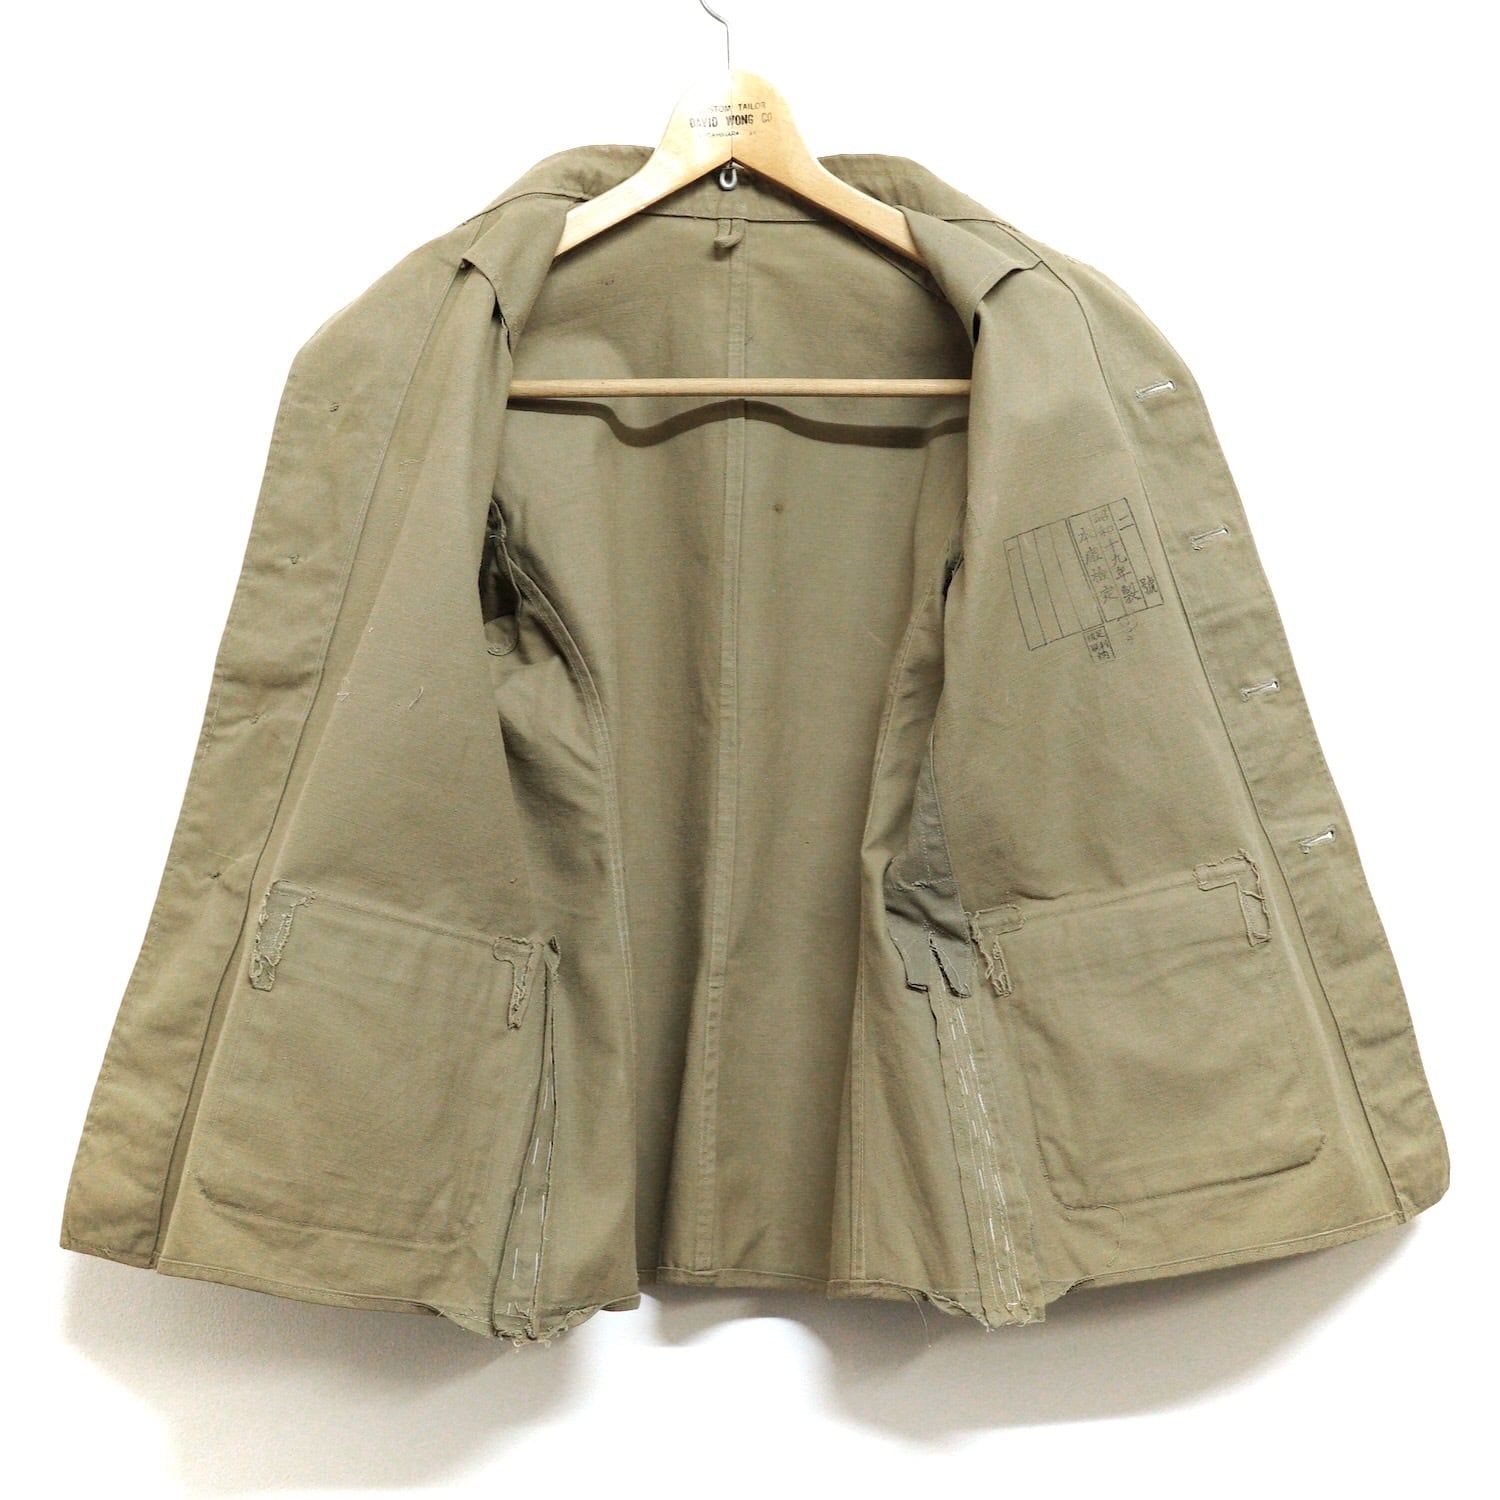 2948 旧日本軍 軍服 上衣 二號 昭和十九年製 本廠検定 レトロ ジャパン